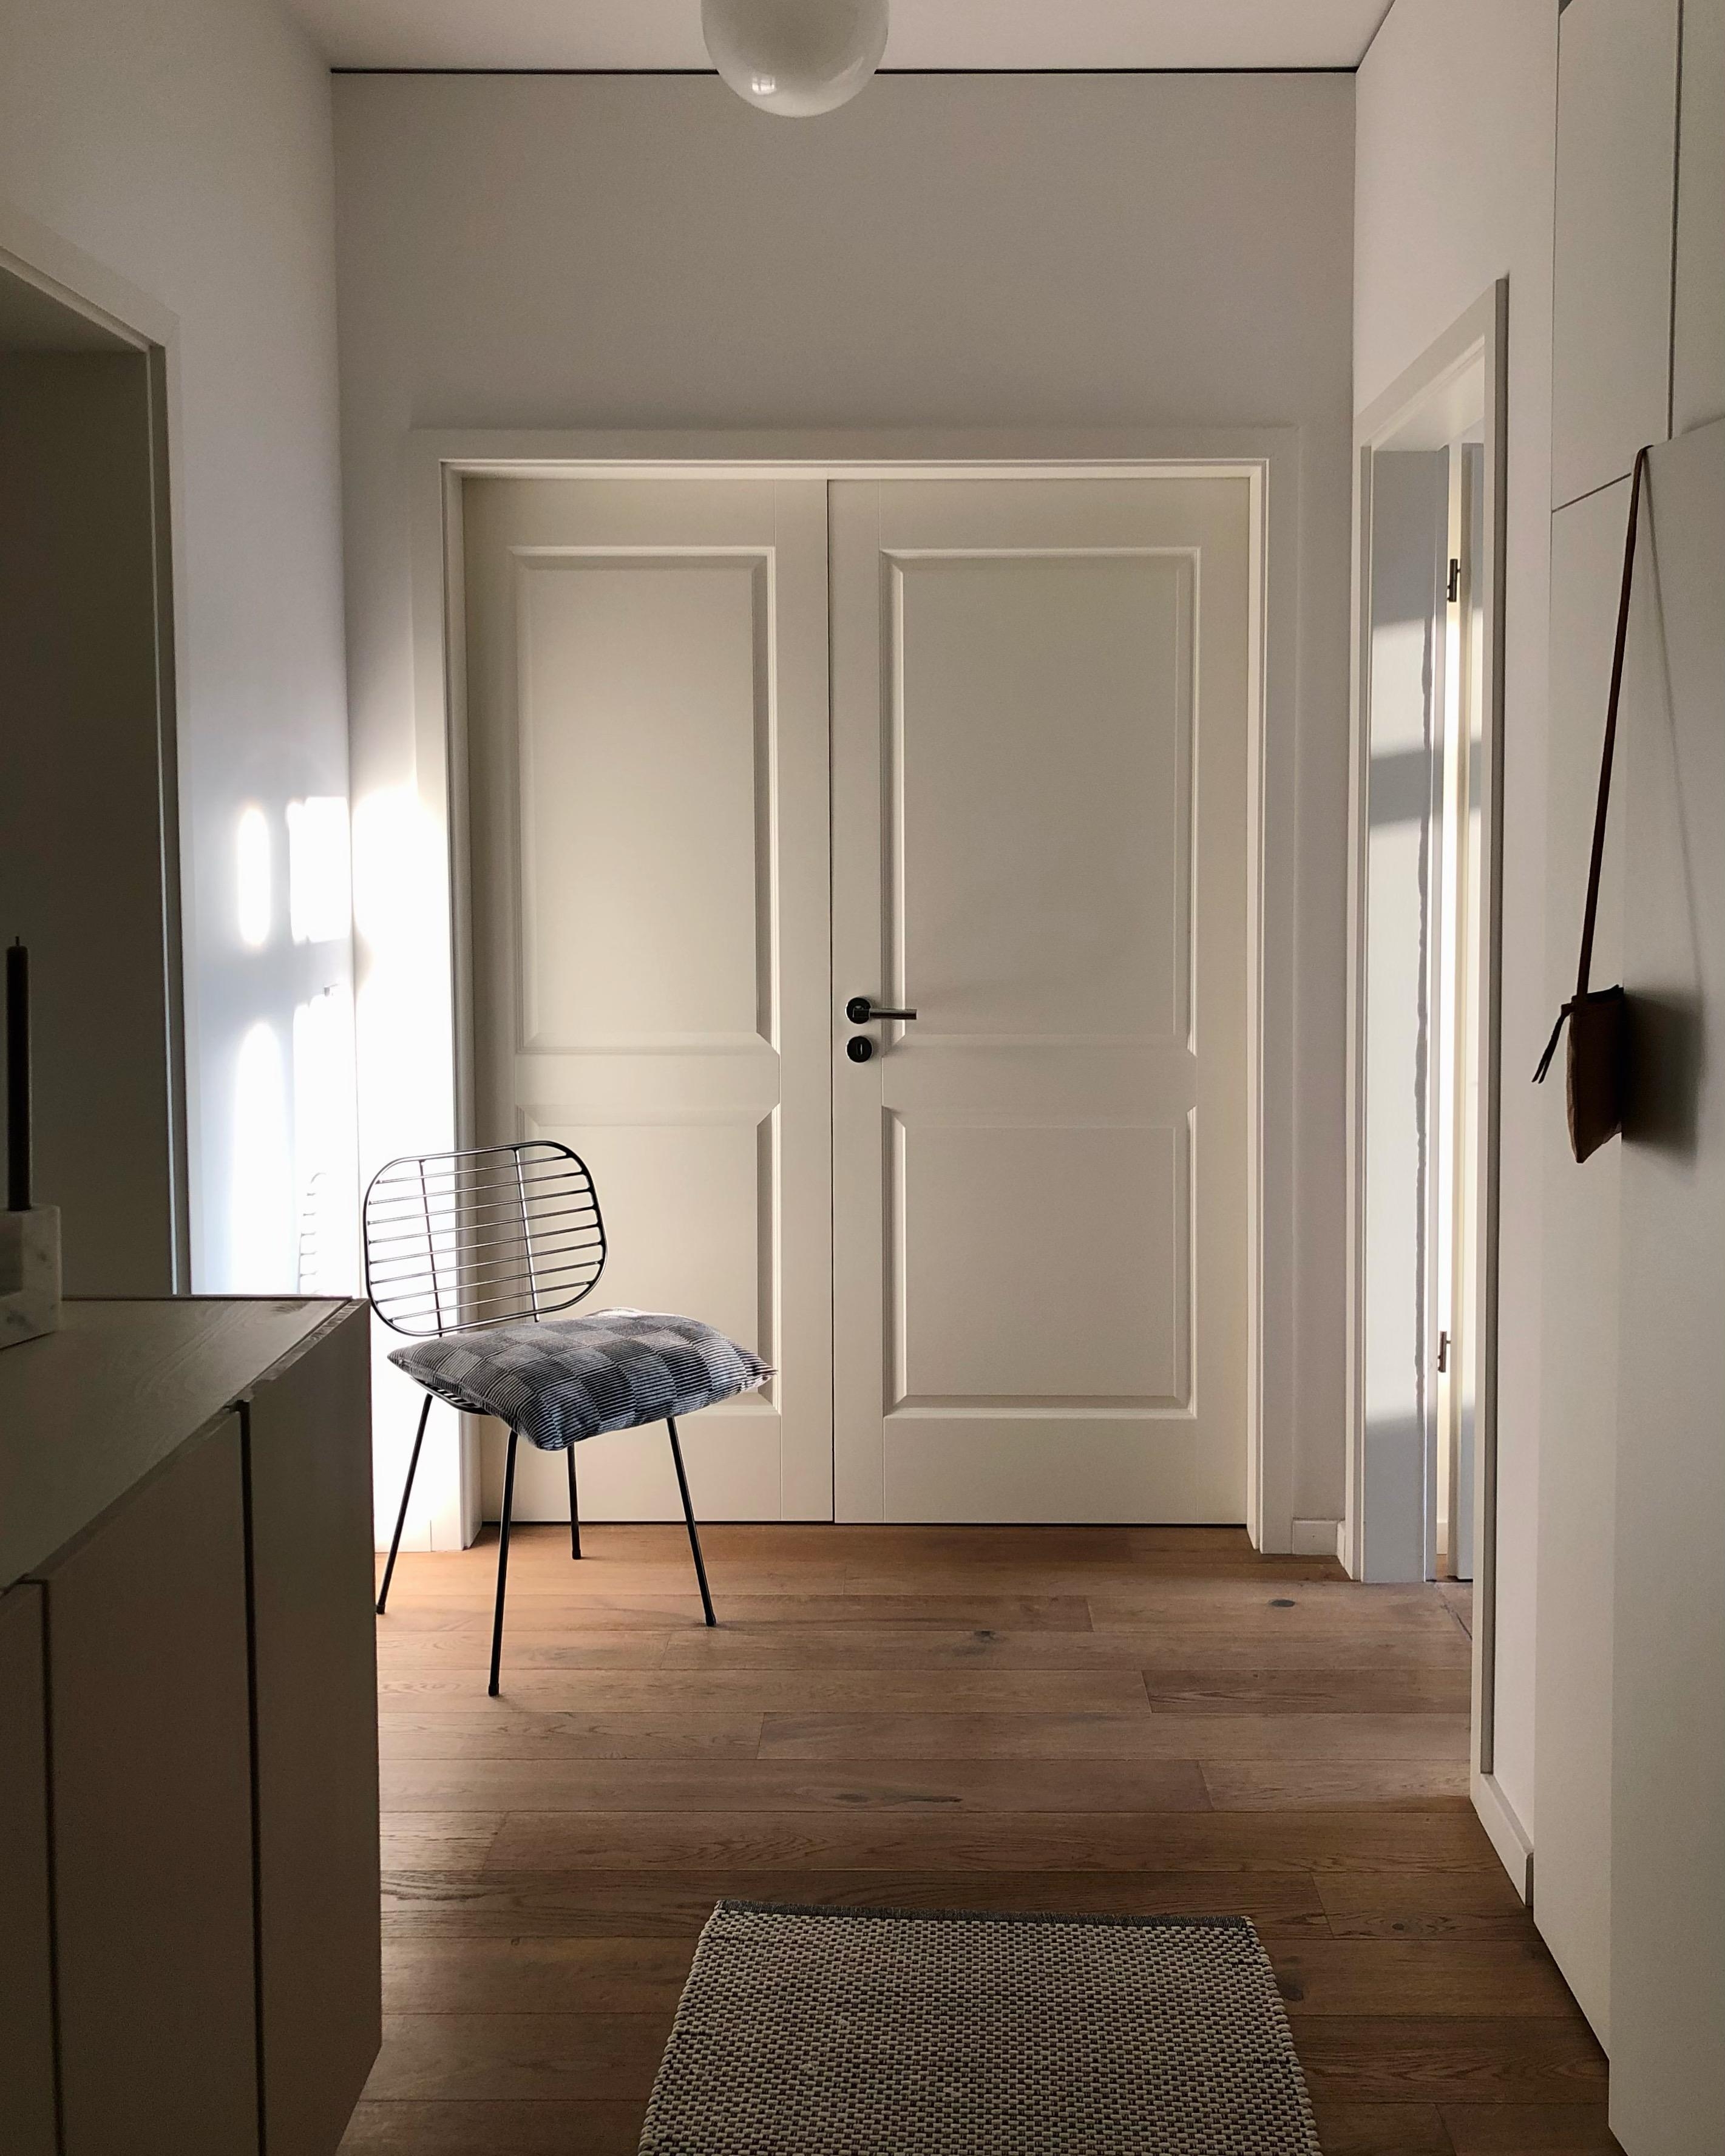 #flur #eingangsbereich #flügeltür #stauraum #ivar #garderobe #minimalistisch #skandinavisch #interior #interieur #home